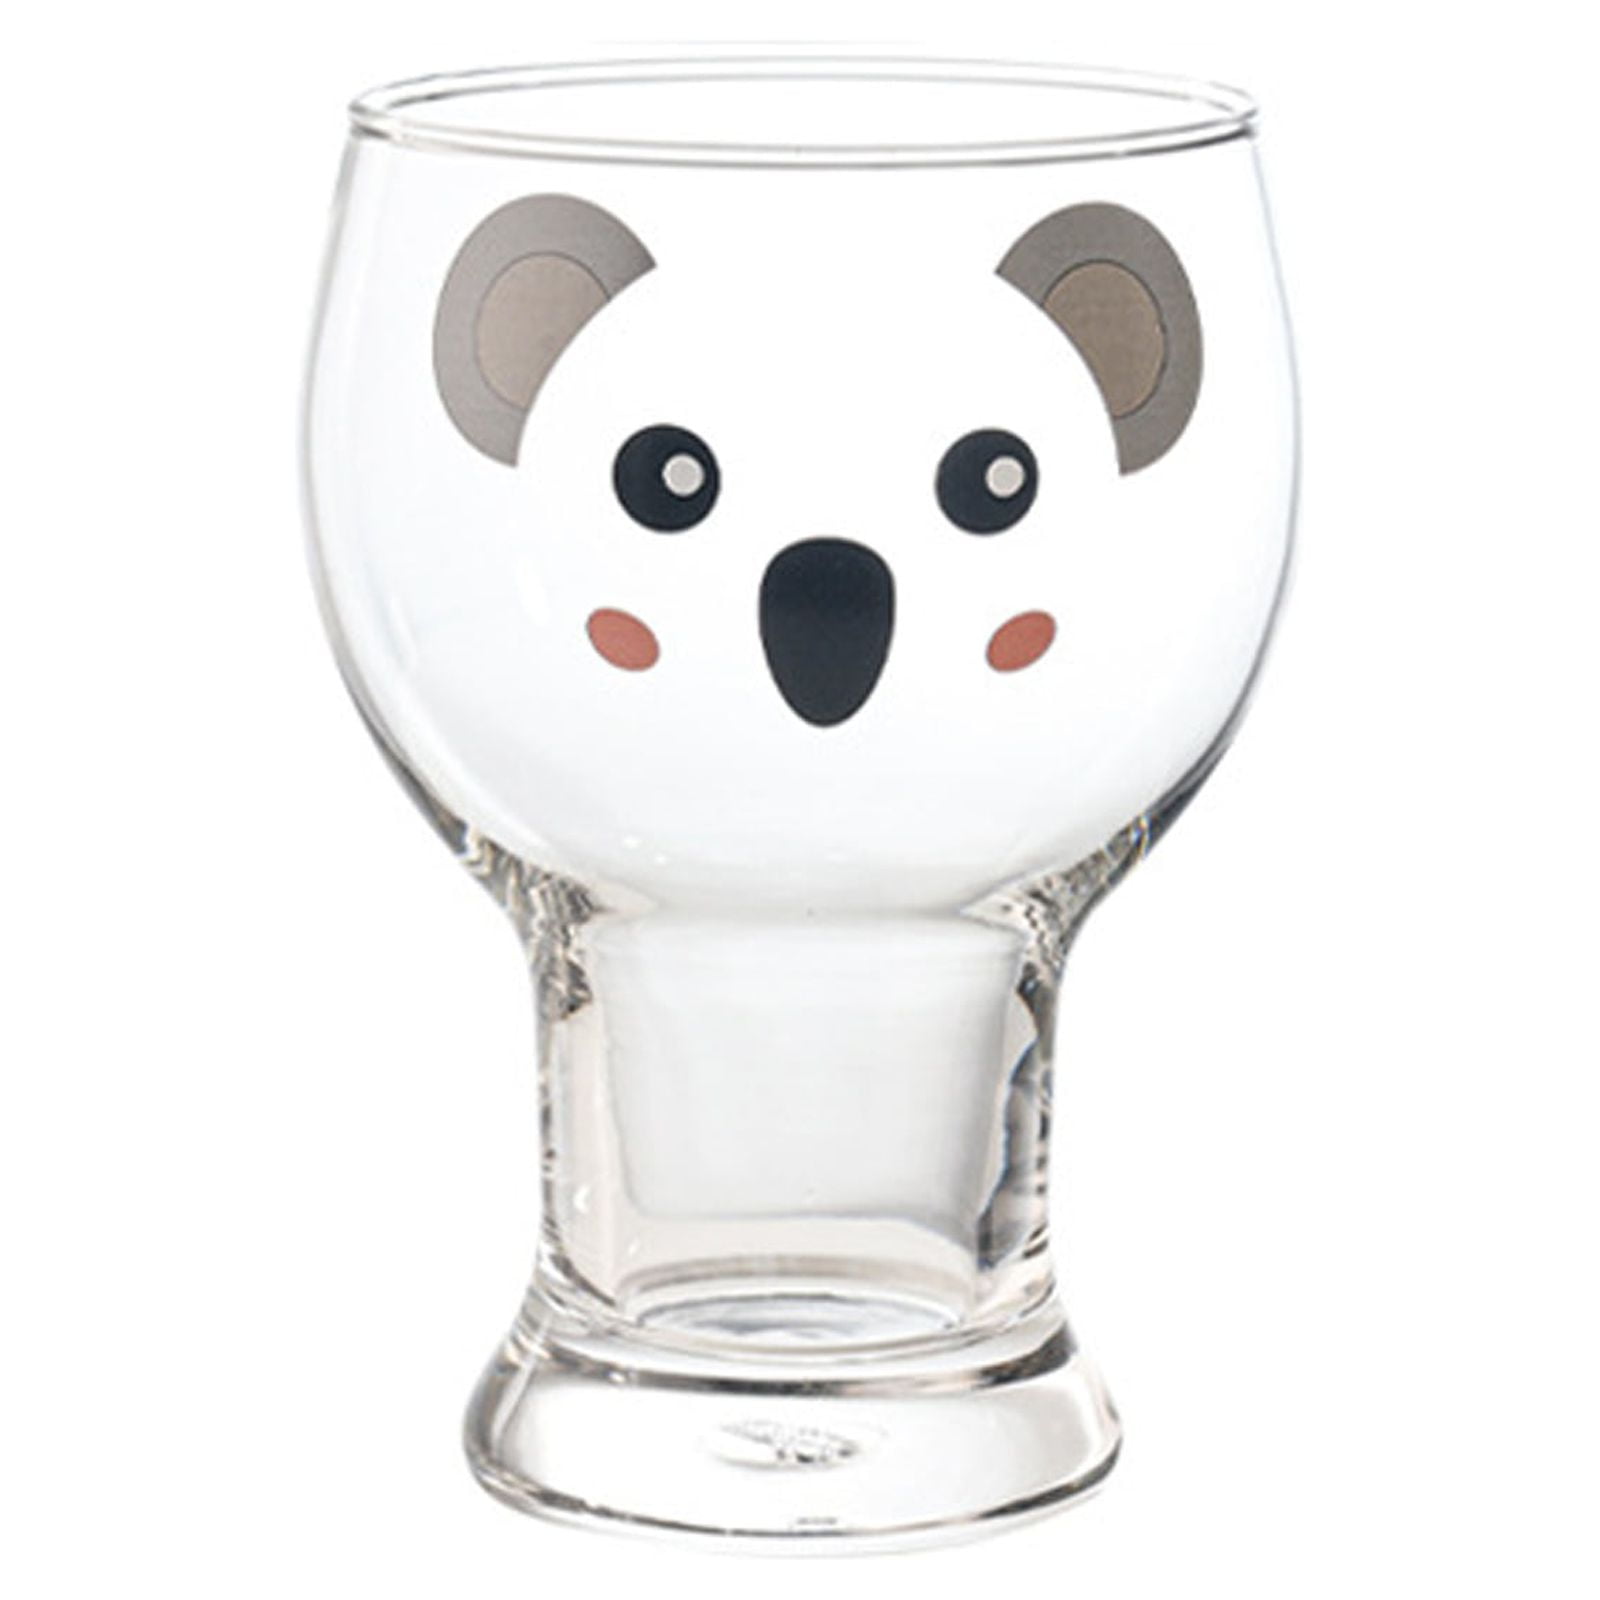 1 pcs Cute Mugs Double Wall Glass Coffee Glass Cup Kawaii Bear Tea